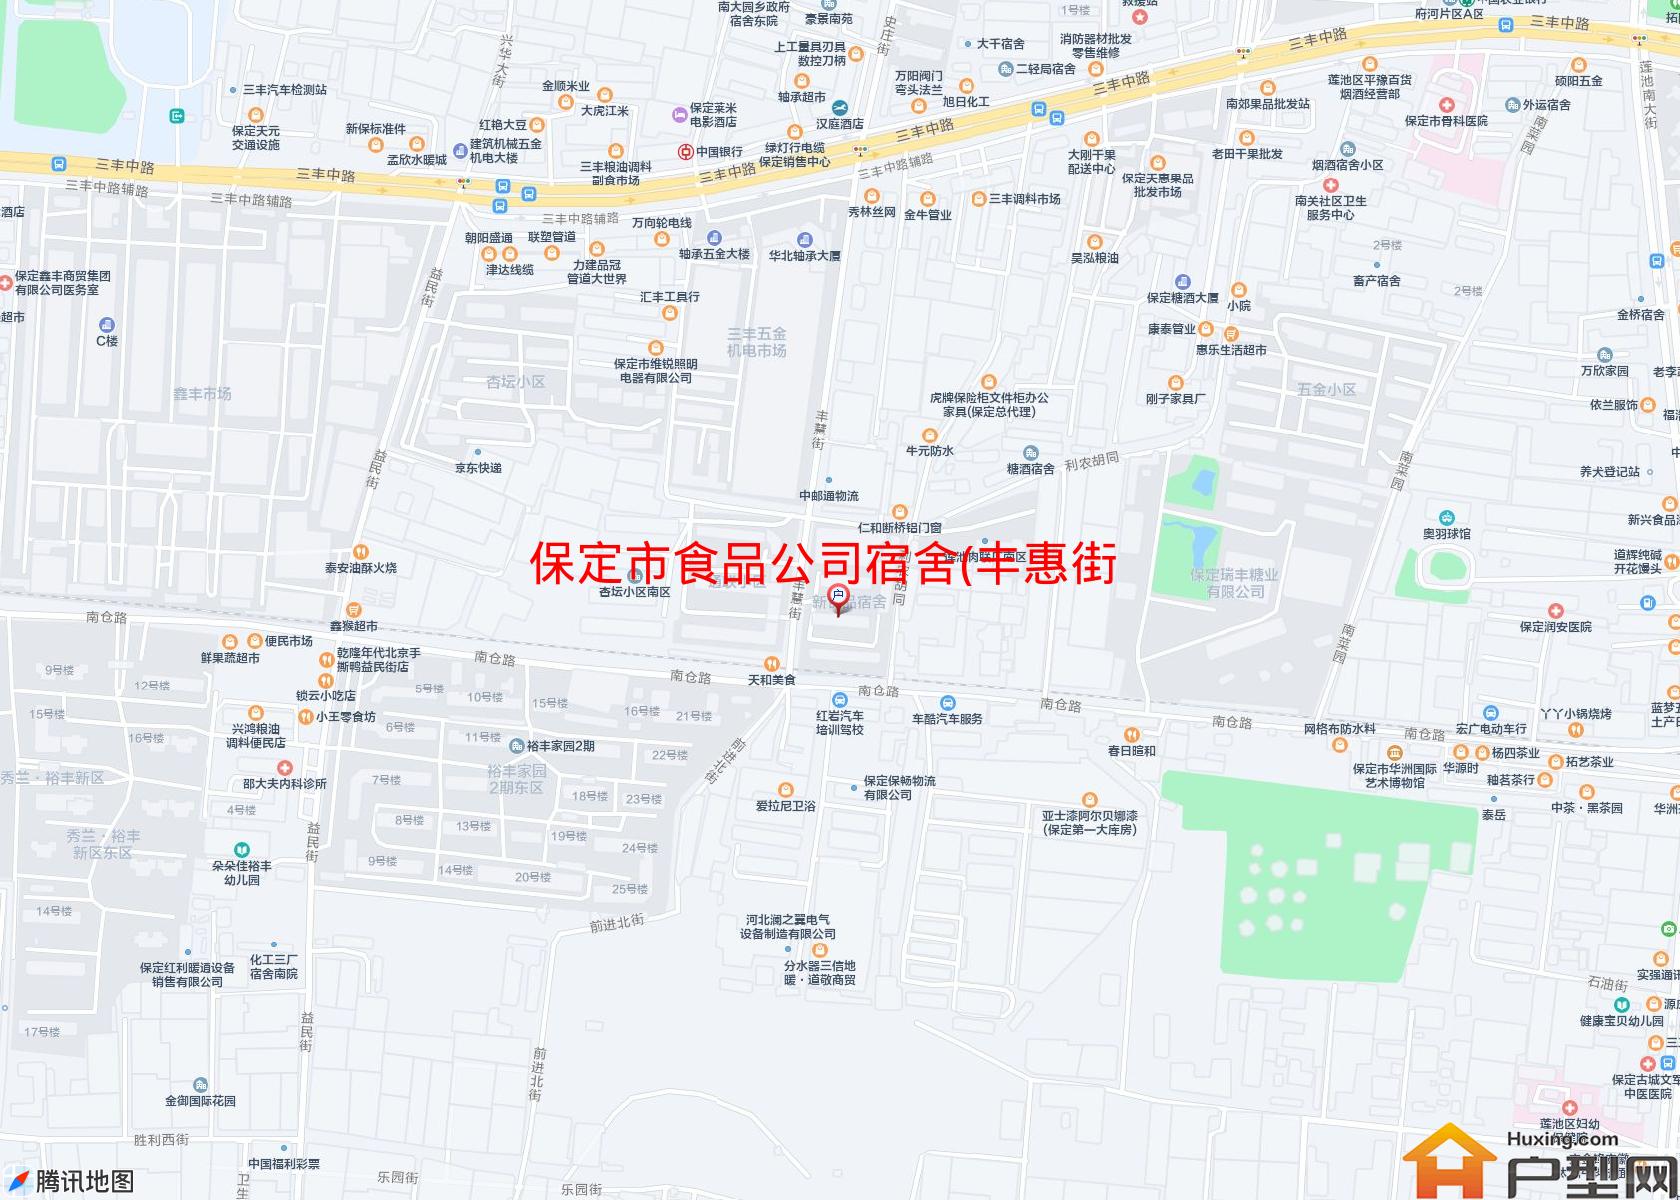 食品公司宿舍(丰惠街)小区 - 户型网